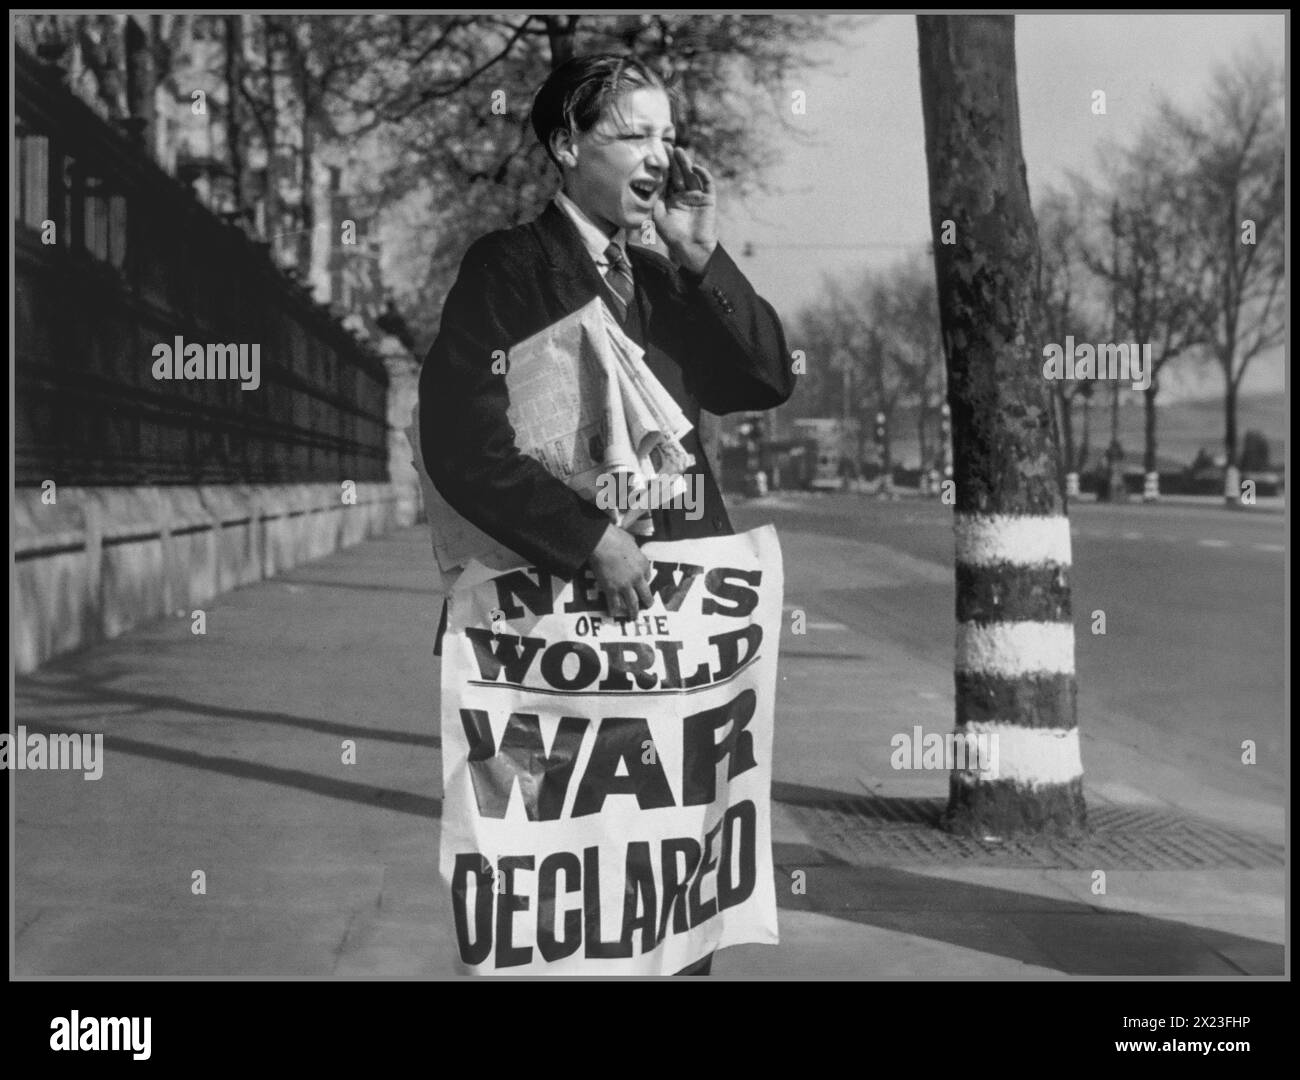 1939 GUERRE DÉCLARÉE, vendeur de journaux britanniques crie la nouvelle que la guerre est déclarée à l'Allemagne nazie. The Embankment London UK. Nouvelles de l'annonce de la bannière mondiale. Seconde Guerre mondiale seconde Guerre mondiale septembre 1939 Londres Grande-Bretagne Royaume-Uni Banque D'Images